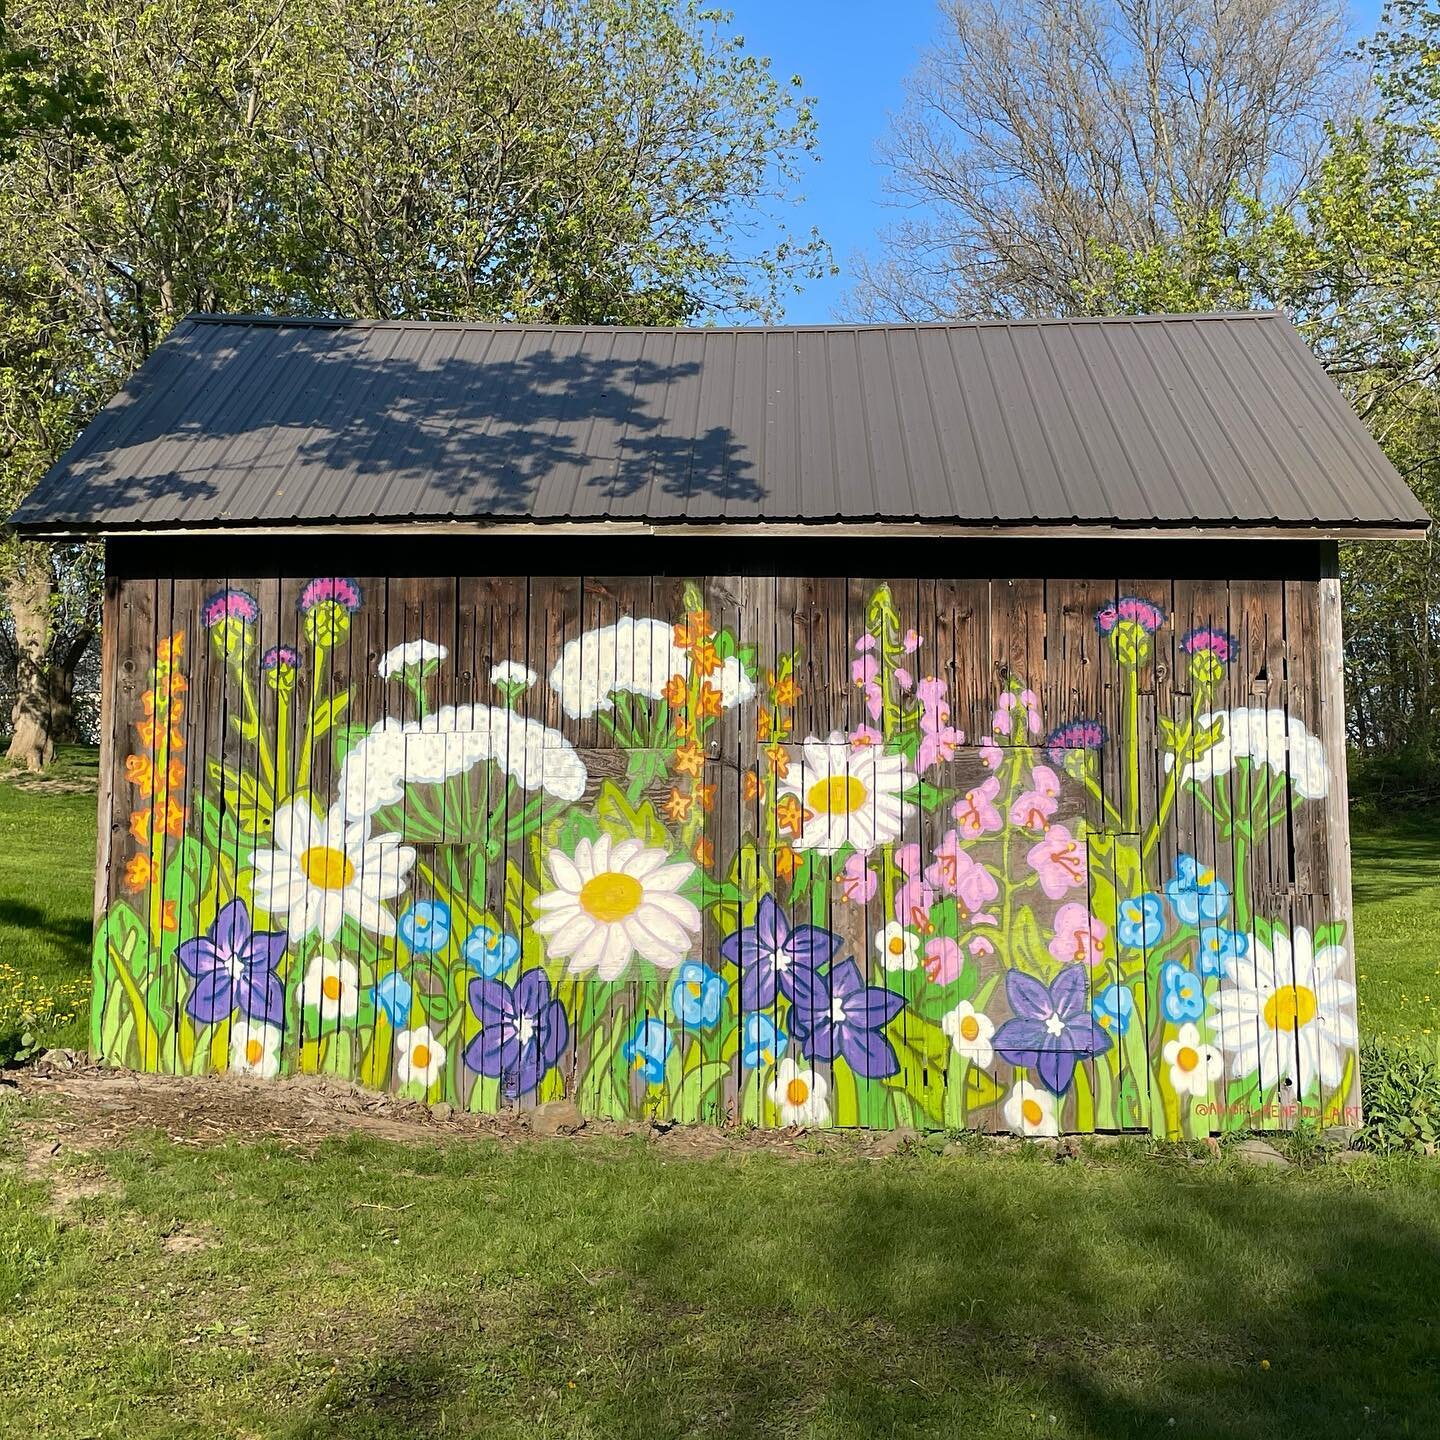 &ldquo;Wildflowers in the Grove&rdquo; Spray paint mural for @hayloftinthegrove complete! 
.
.
@montana_colors #montanaspraypaint #muralartist #spraypaintart #eastaurorany #buffaloartist #716art #muralist #womenwhopaint #ladieswhopaint